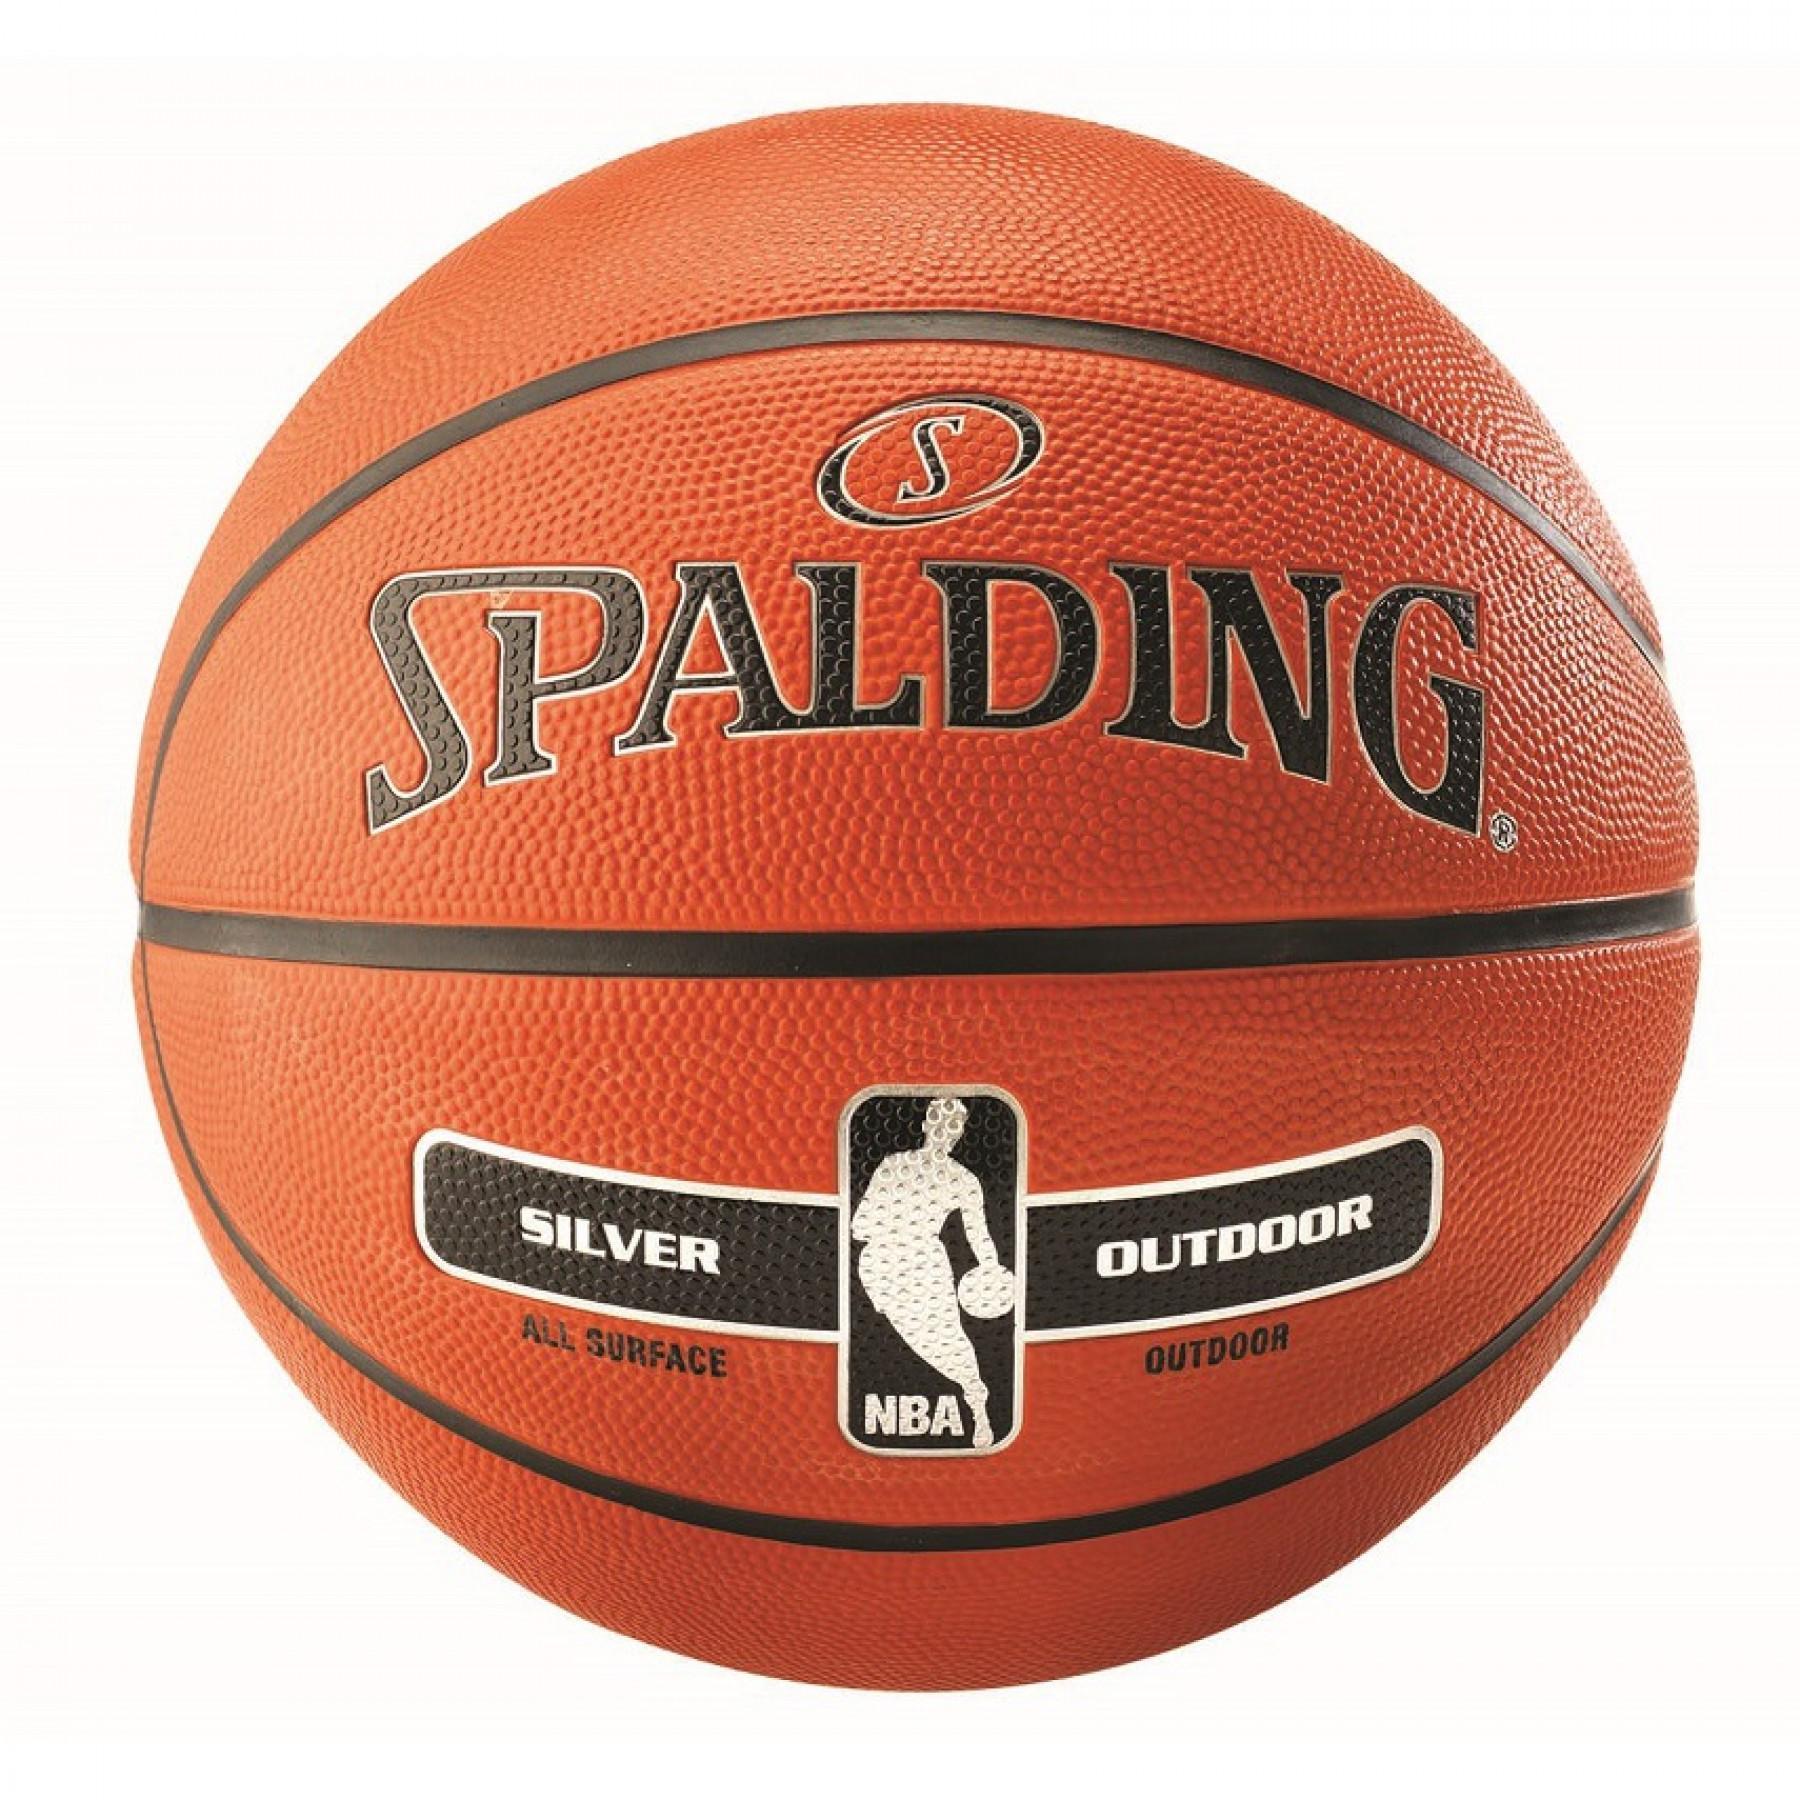 Ballong Spalding NBA Silver Outdoor